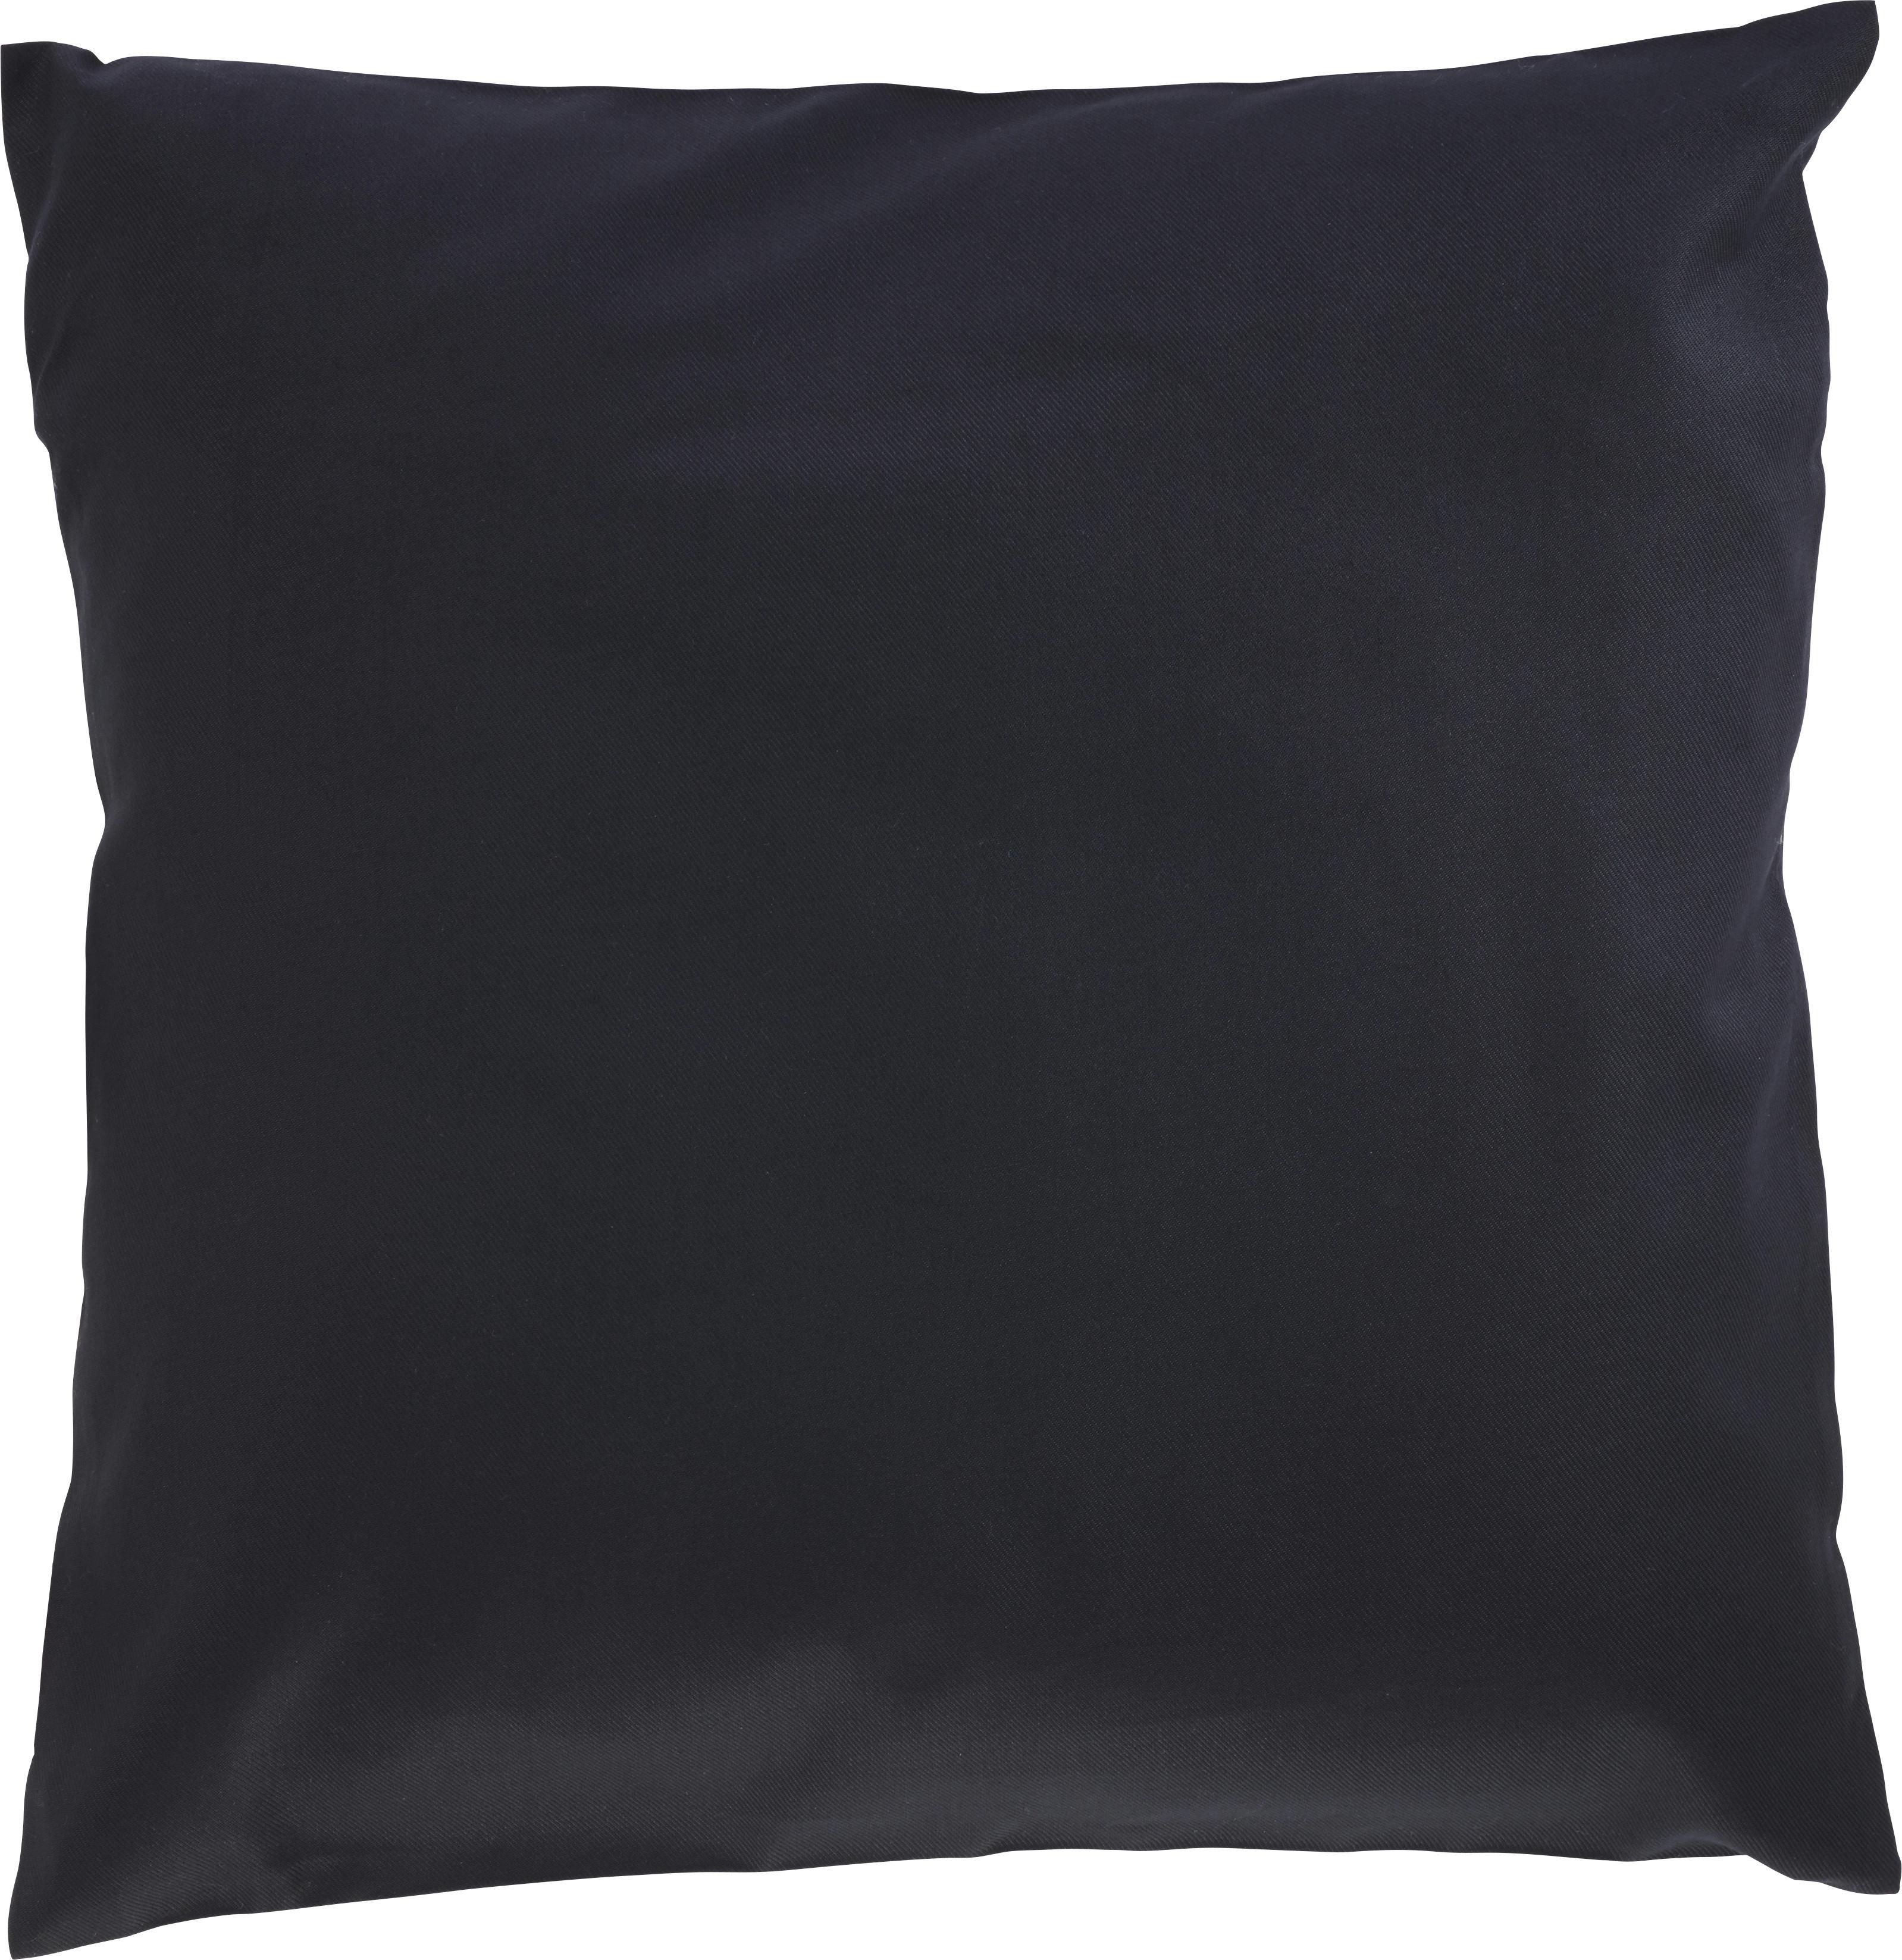 Polštář Ozdobný Zippmex,50/50cm - černá, textil (50/50cm) - Modern Living